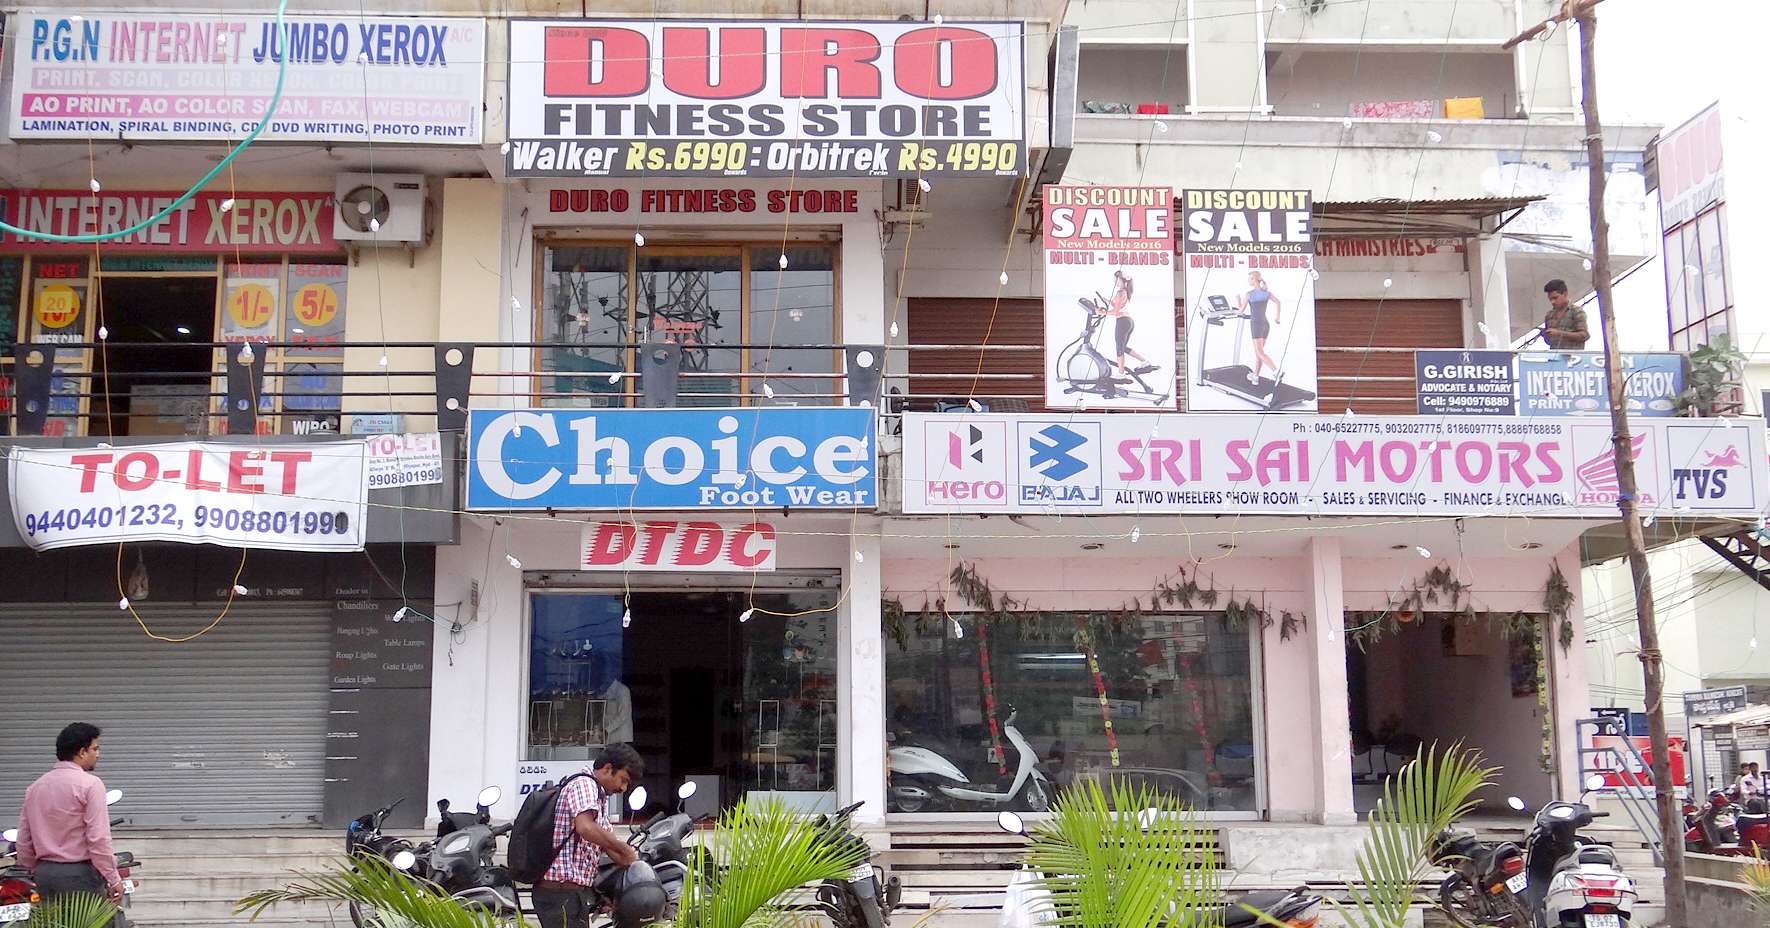 Duro Fitness Store - Miyapur